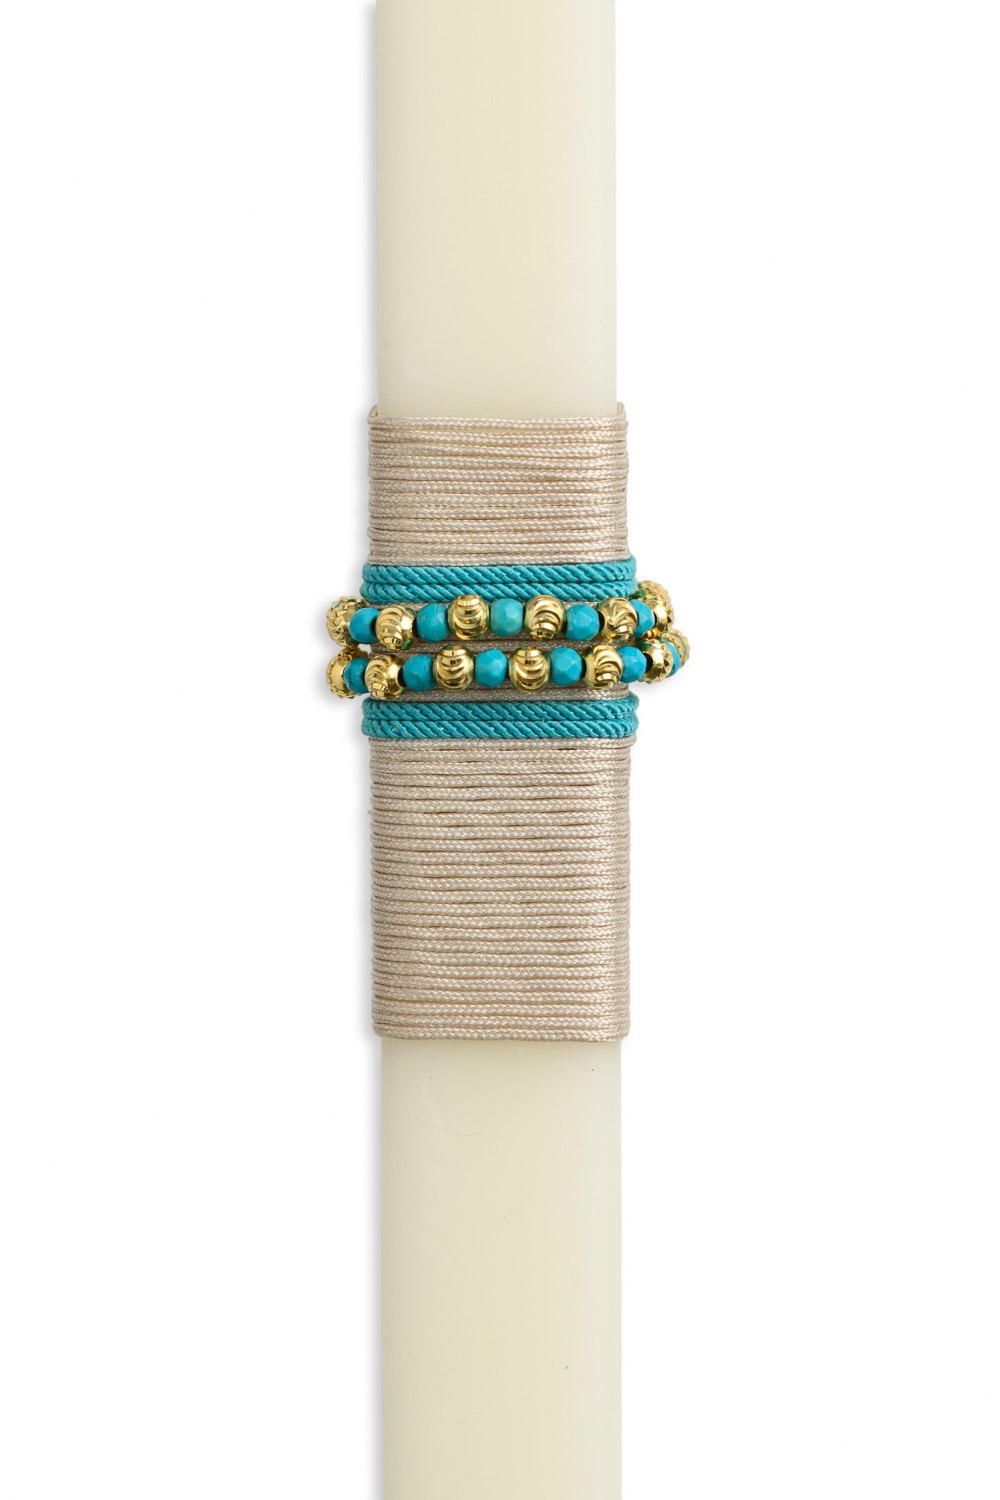 KESSARIS - Silver Boho Beaded Bracelet Handmade Easter Candle